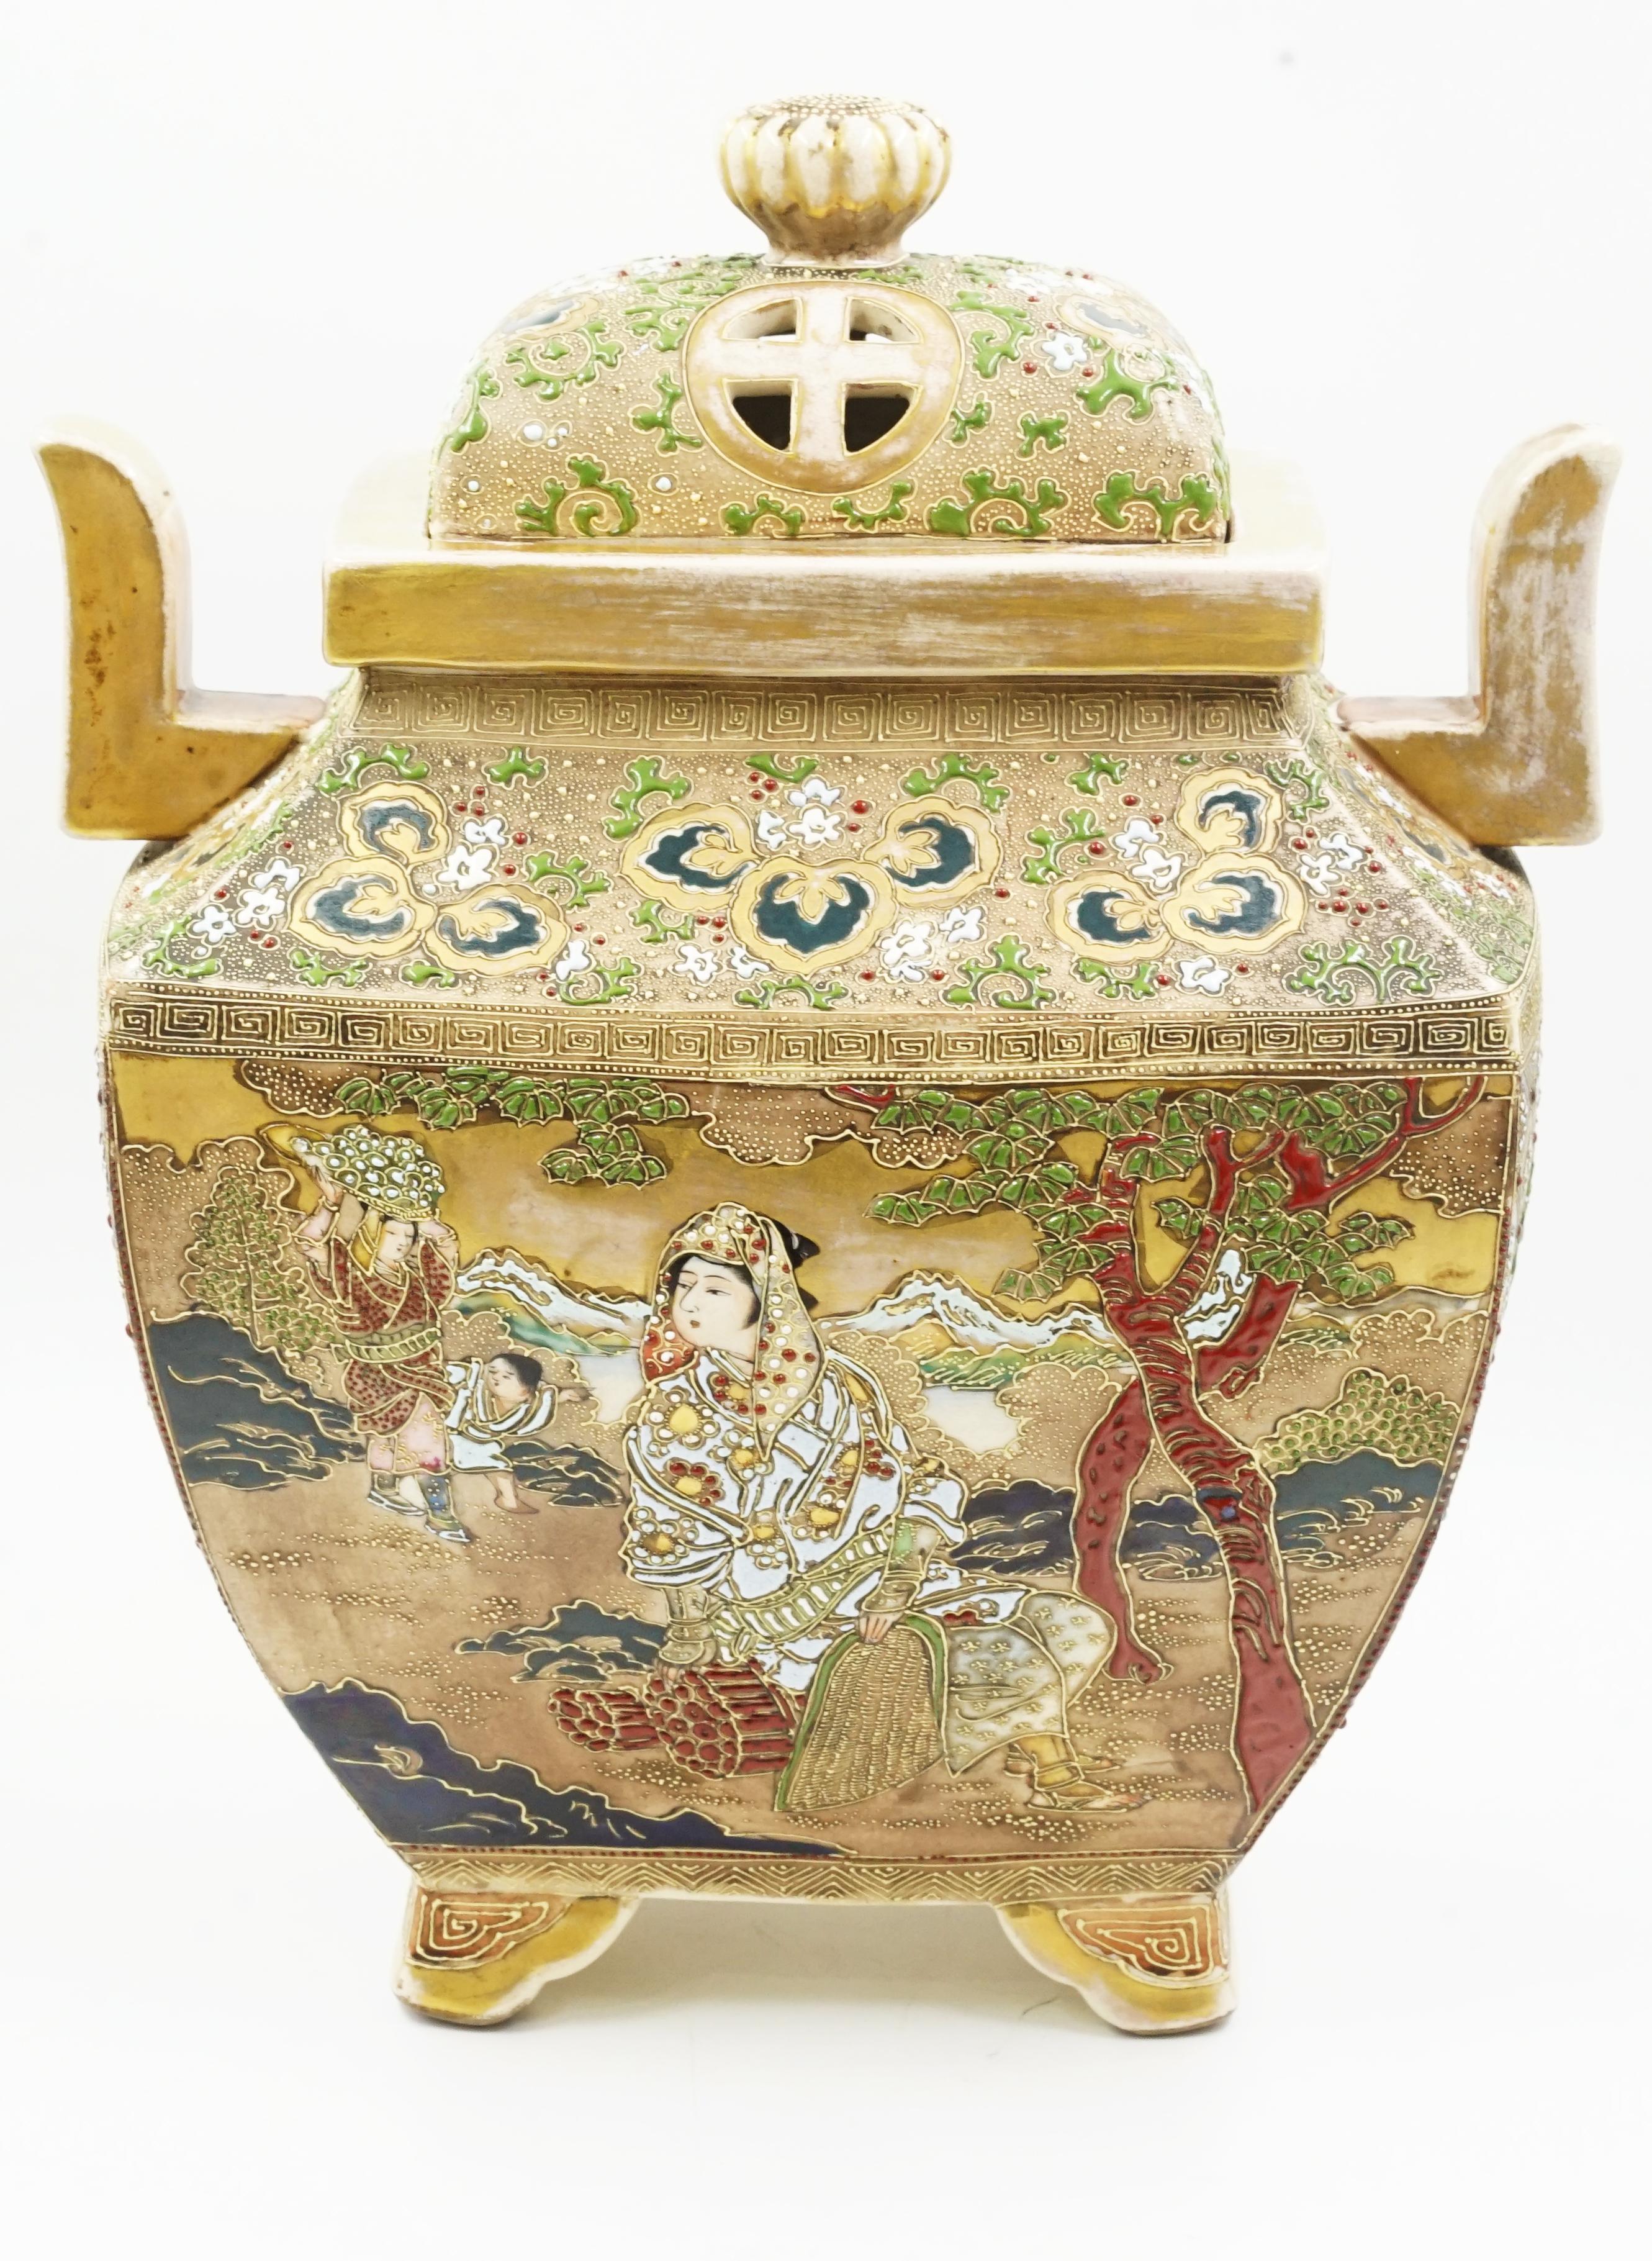 Koro Satsuma Céramique japonaise
Céramique émaillée japonaise de différentes couleurs
Style Meiji Circa 1940 Origine Japon
Des images traditionnelles sont peintes au recto et au verso.
Le but de cette céramique était de brûler de l'encens.
Il est en